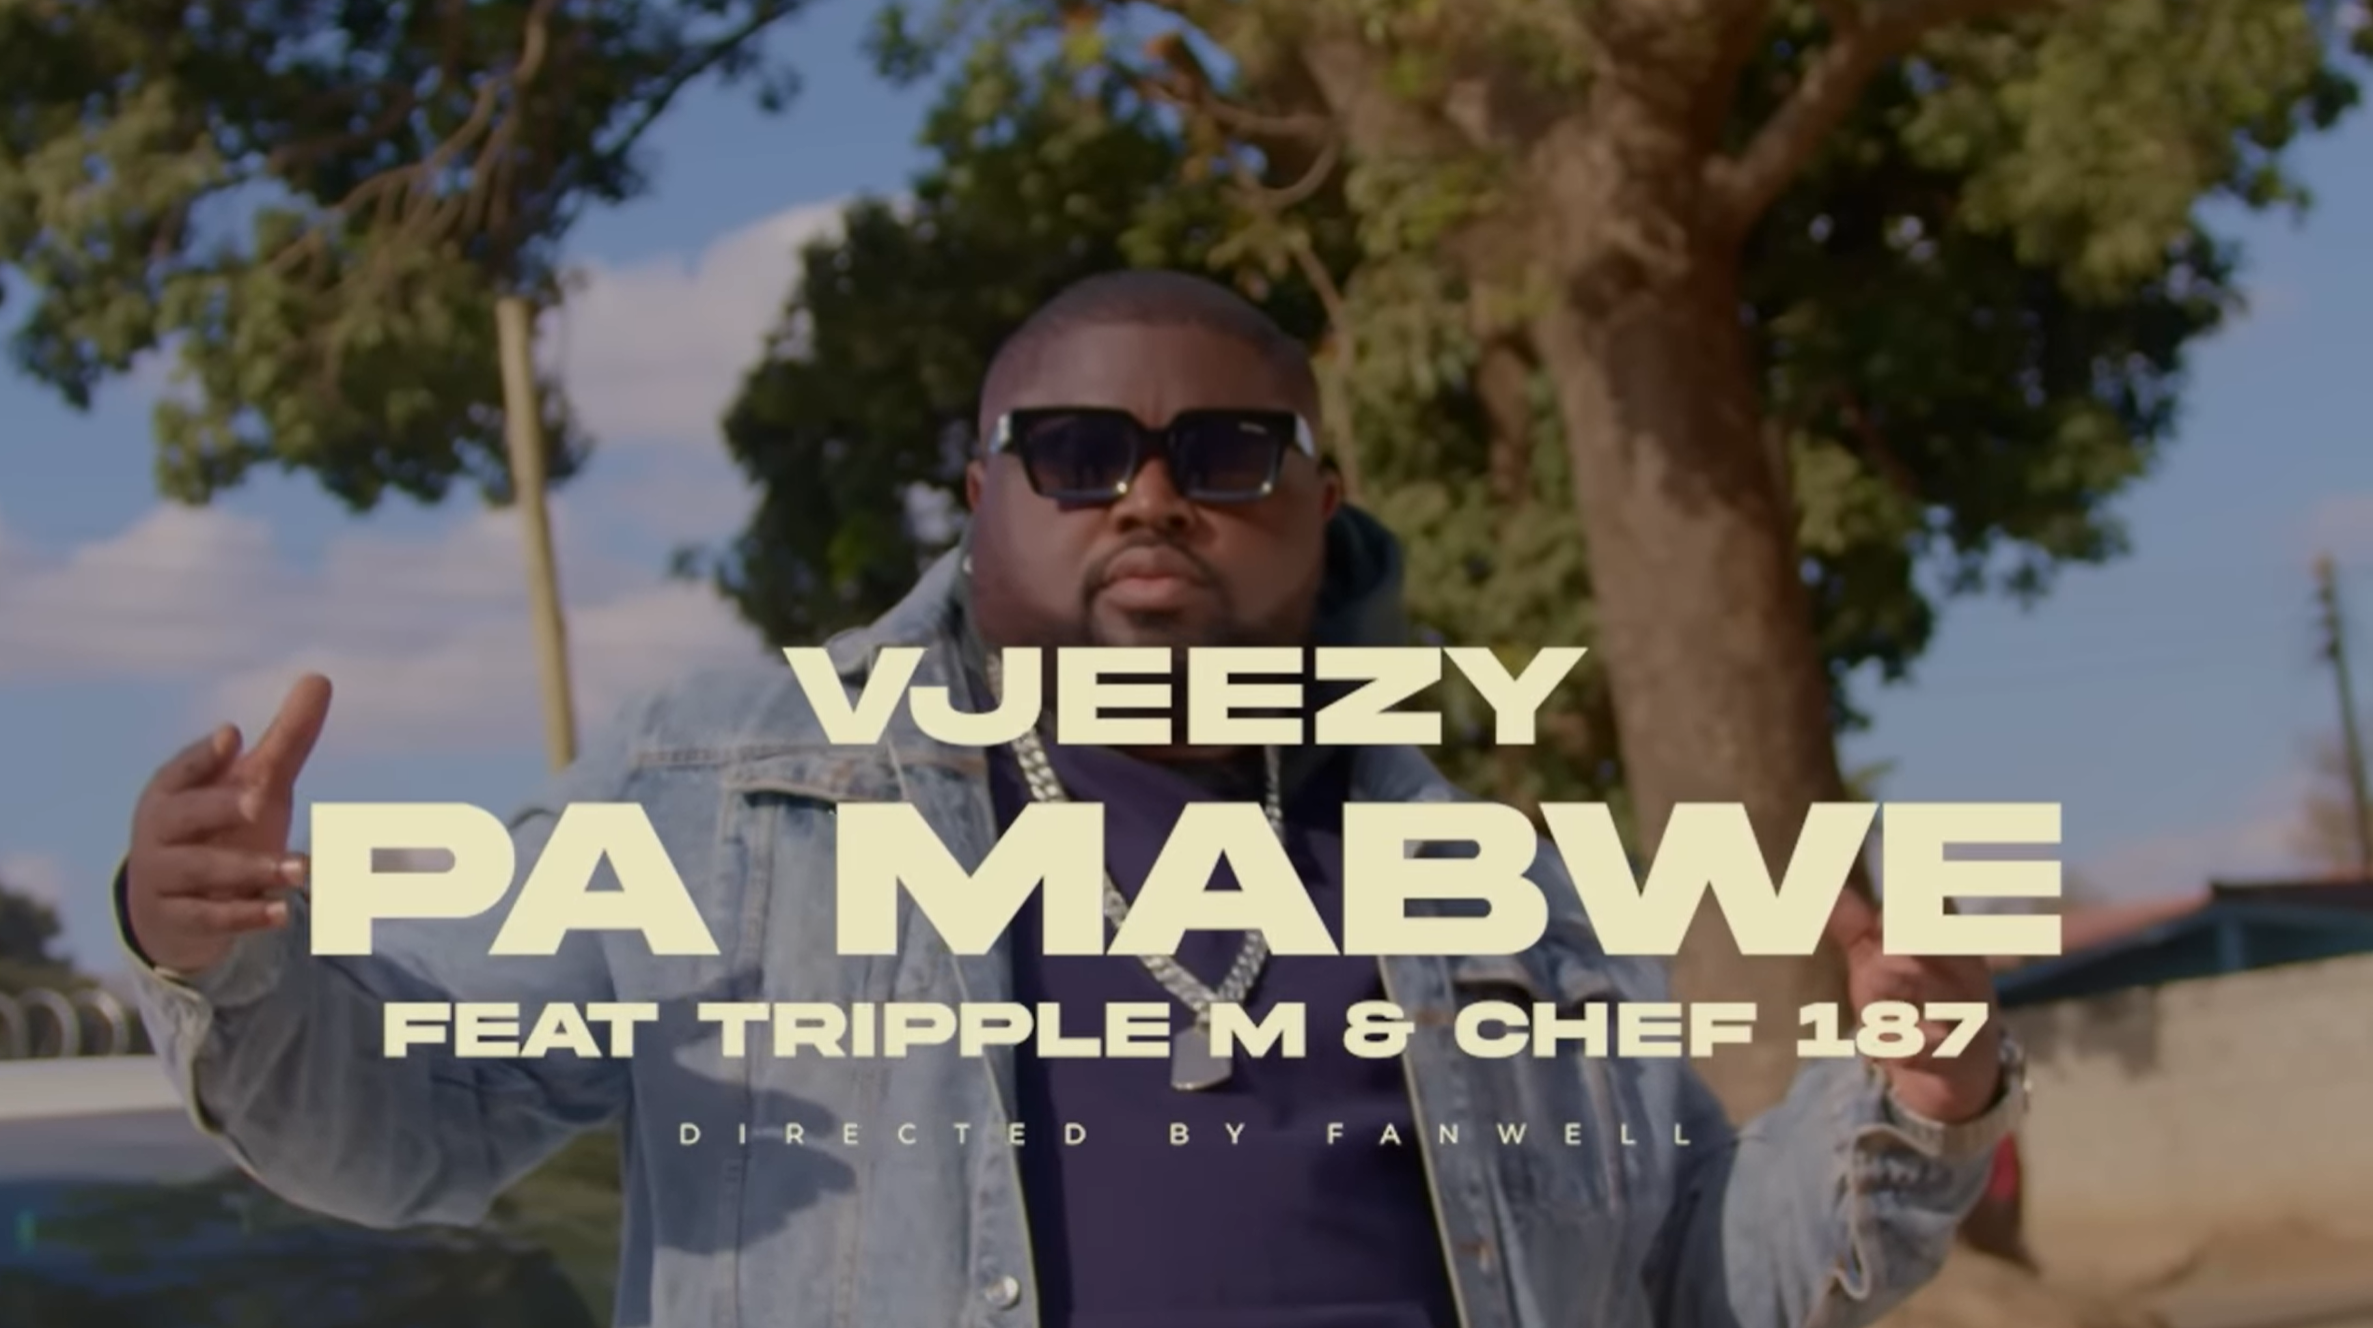 Tripple M Ft Chef 187 - Pa Mabwa Download mp3 - Zed Music Web